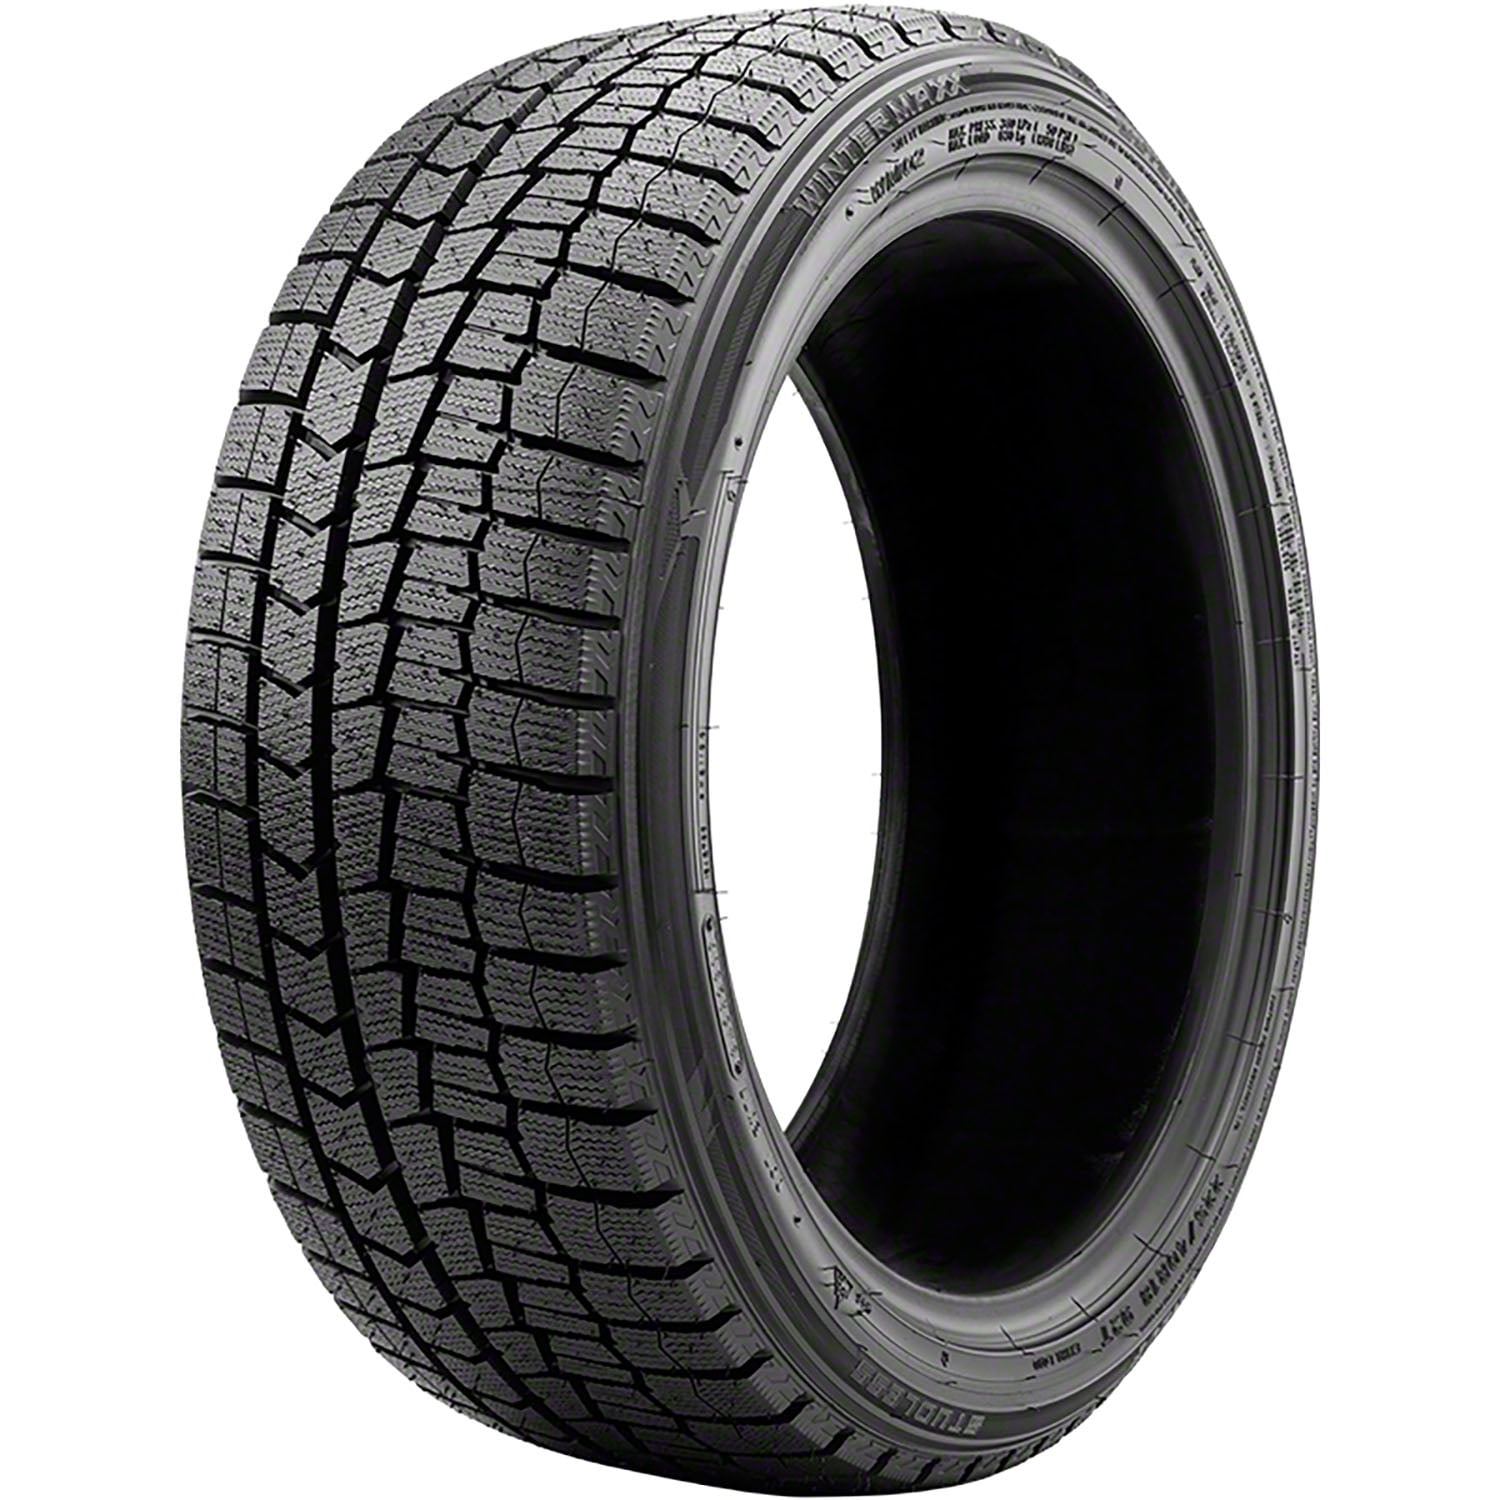 2 Tire Dunlop 215/55R16 97T Winter Winter Maxx